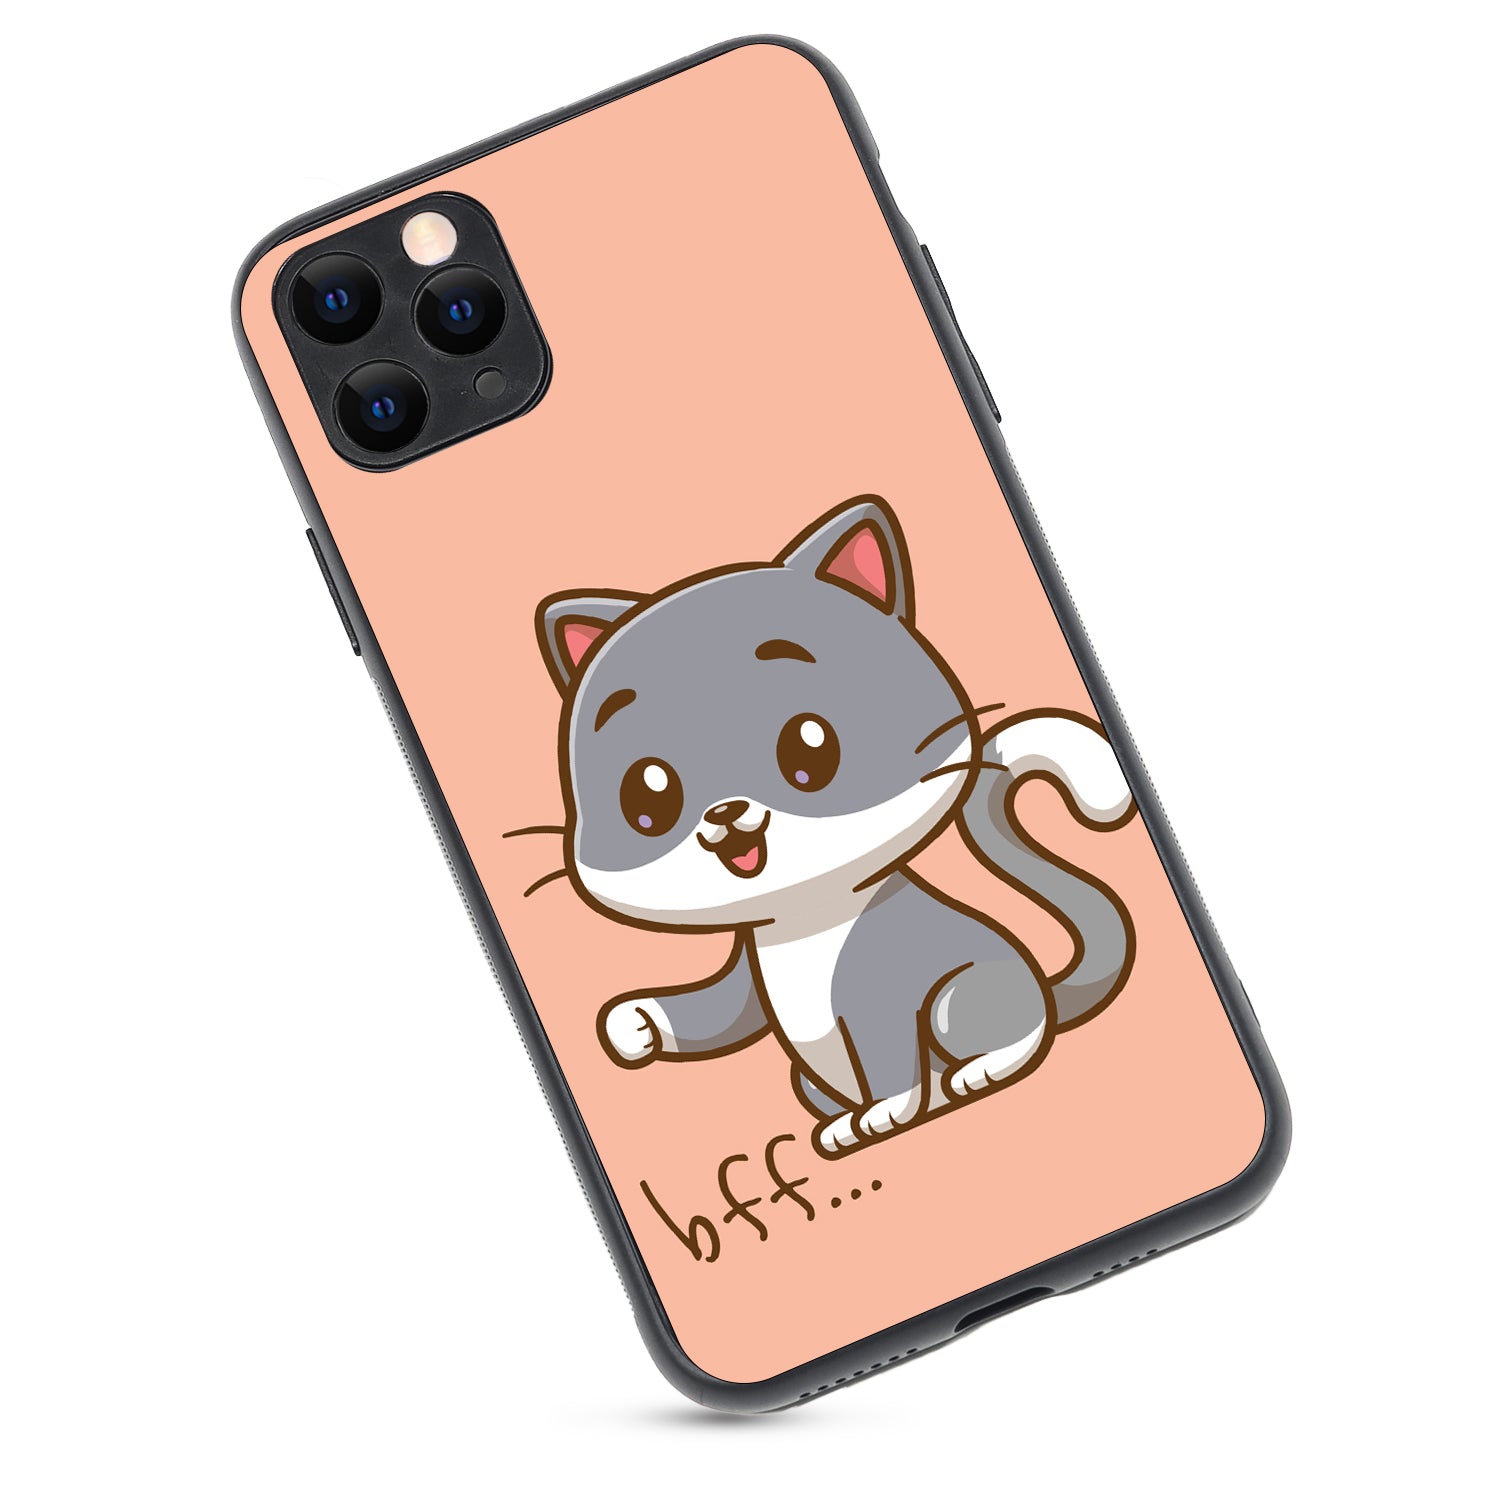 Best Friend Cat Bff iPhone 11 Pro Max Case